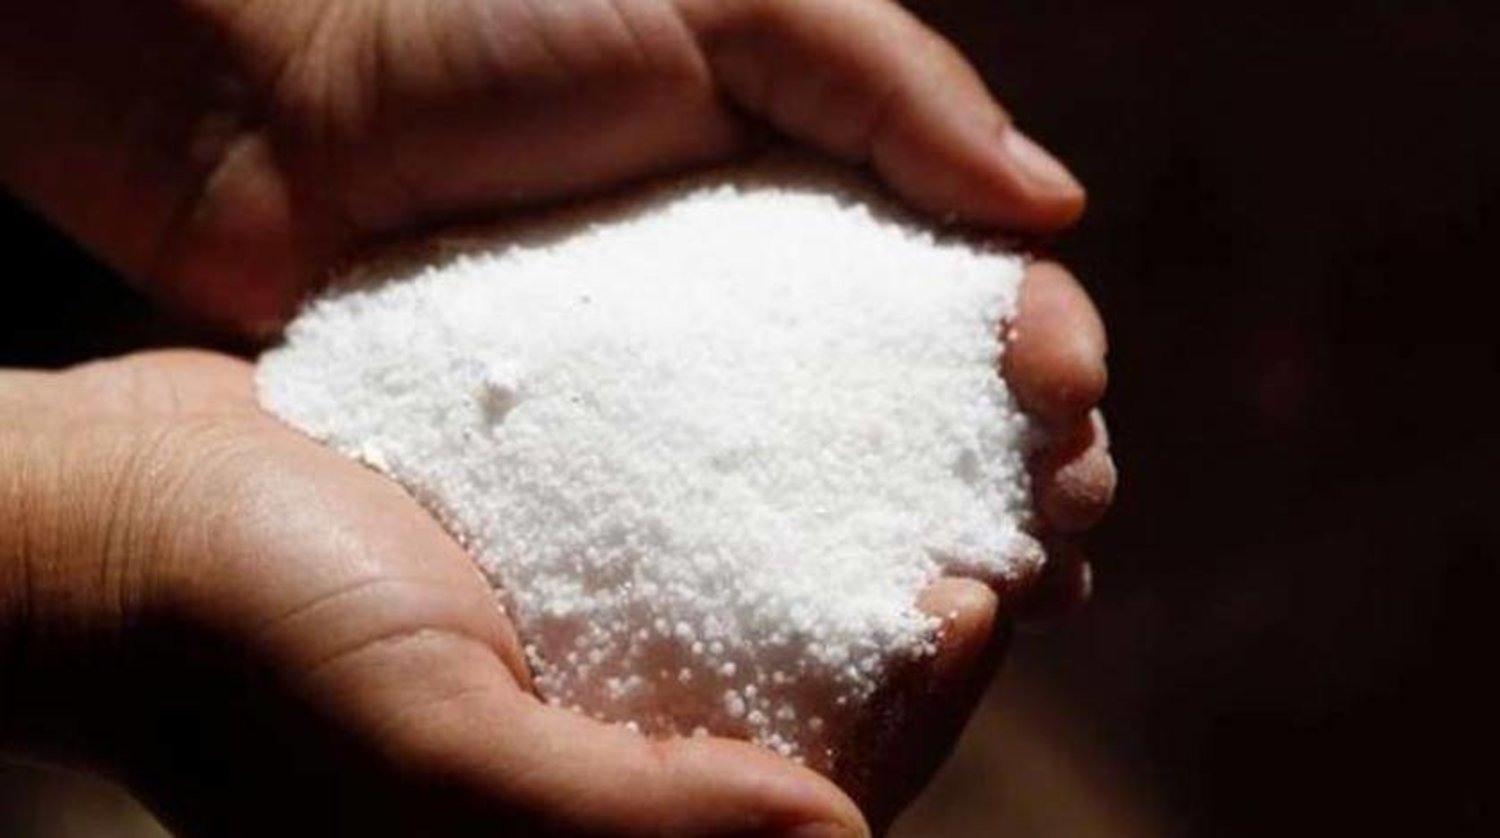 تقليل استهلاك الملح بمقدار ملعقة صغيرة يعادل مفعول أدوية ارتفاع ضغط الدم